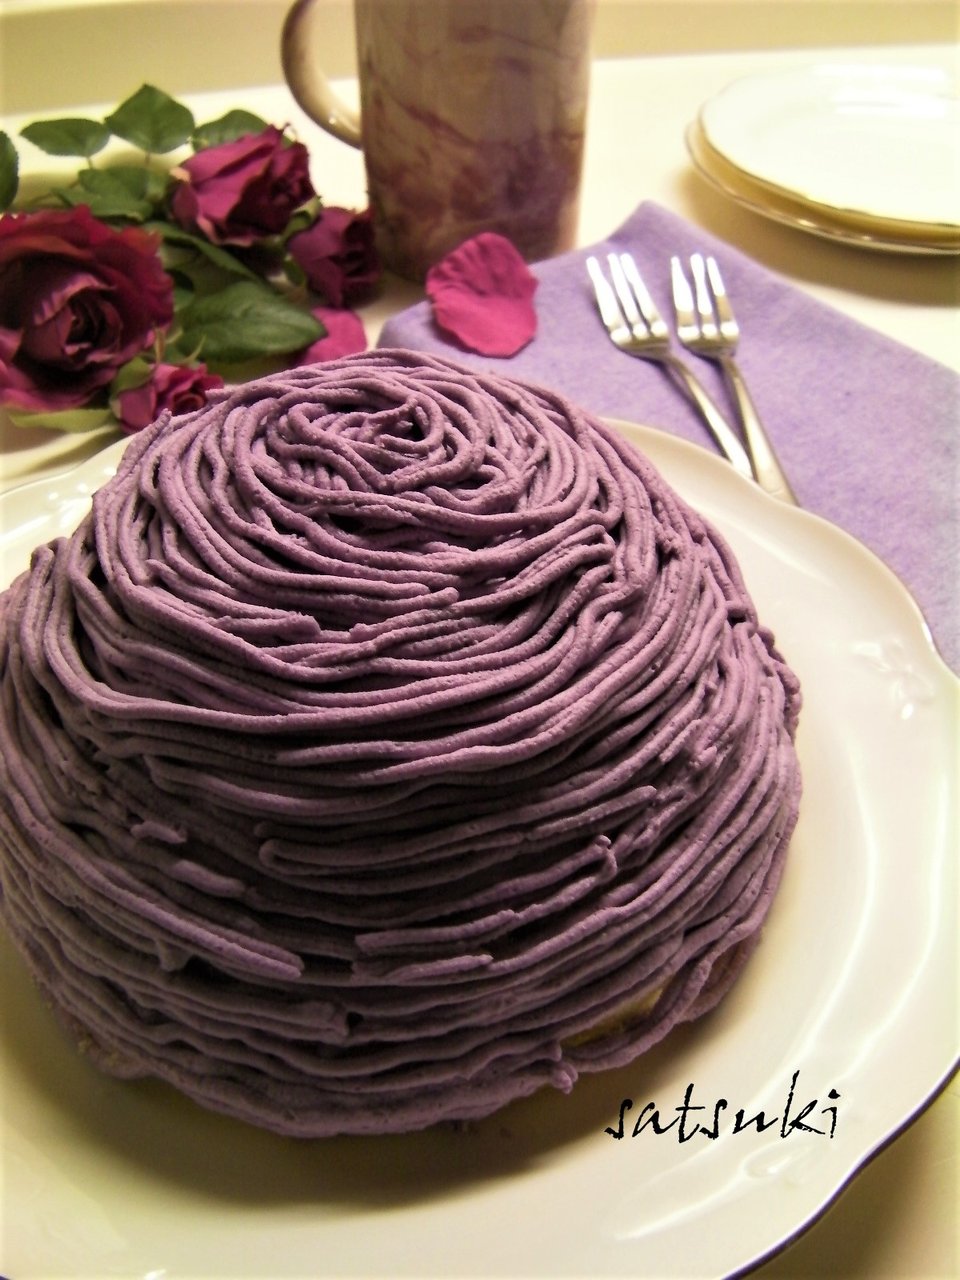 紫芋のドームケーキ モンブラン風 彩月satsukiの料理帖